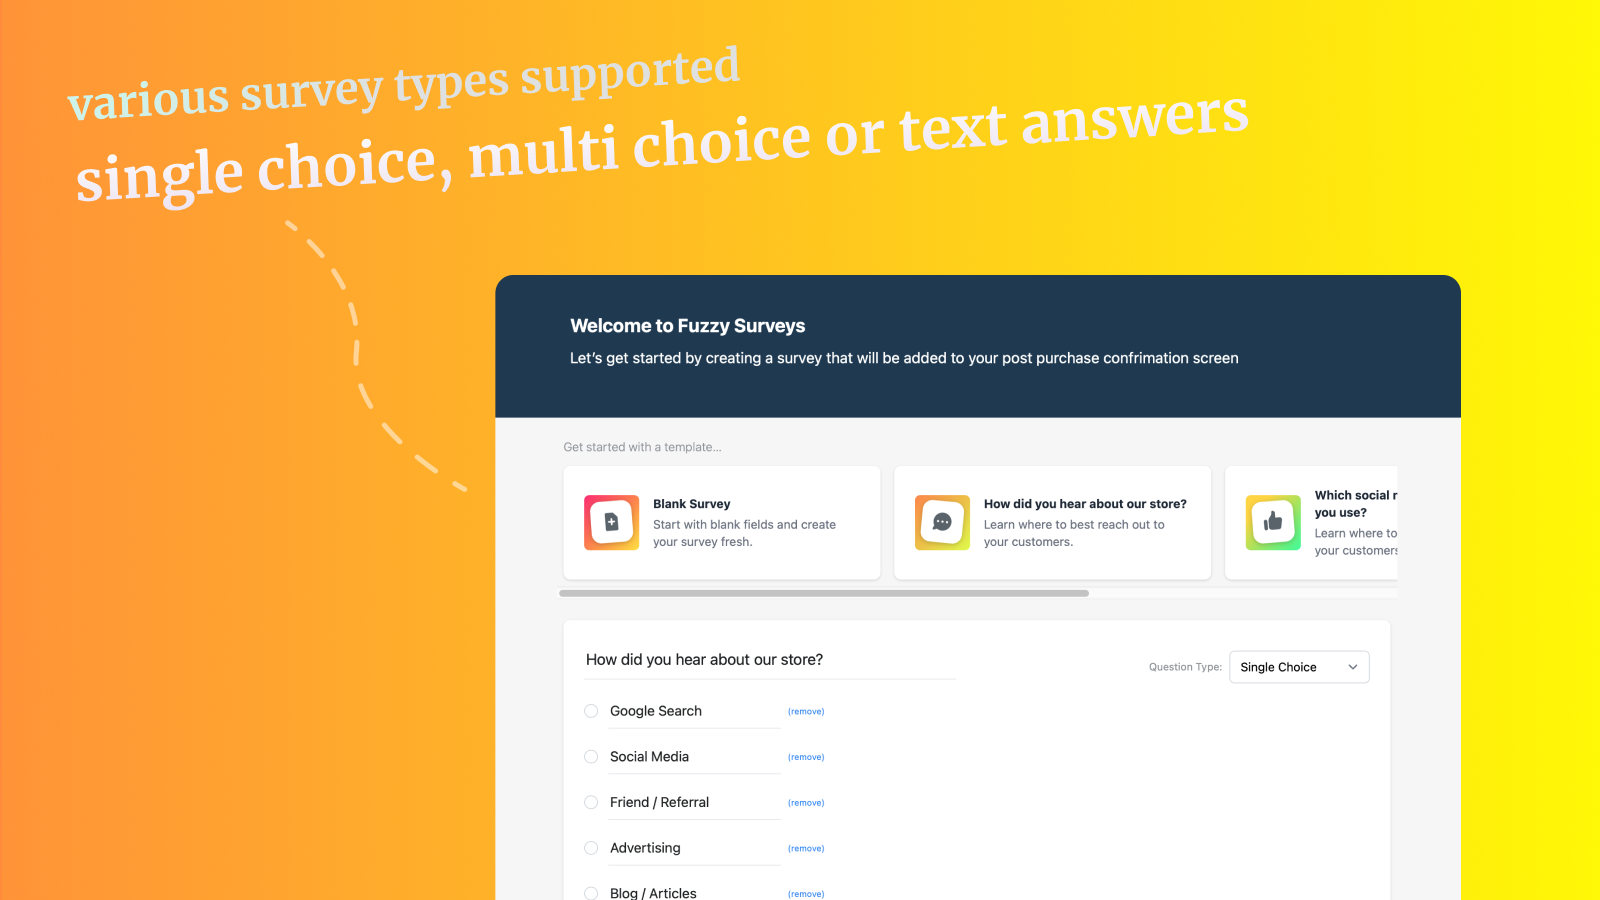 verschillende soorten enquêtes ondersteund - enkelvoudige, meervoudige of tekst antwoorden